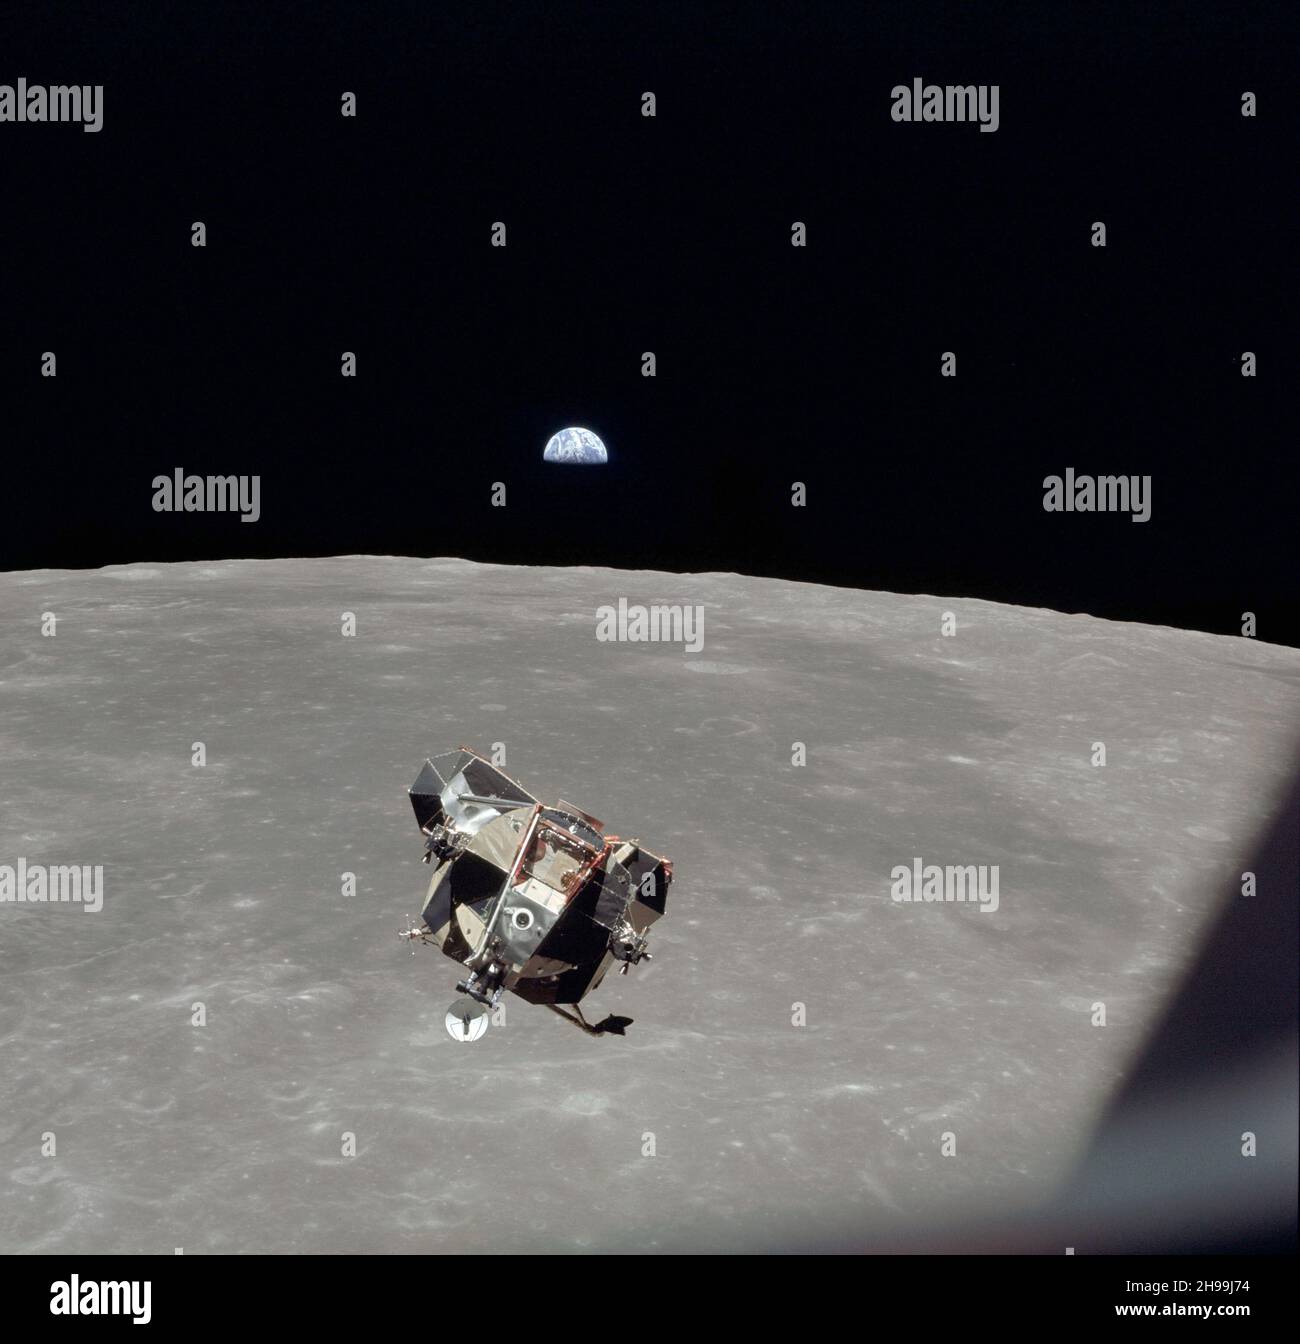 La fase di ascesa del modulo lunare Apollo 11, con gli astronauti Neil A. Armstrong e Edwin E. Aldrin Jr. A bordo, è fotografata dai moduli di comando e servizio (CSM) durante il rendezvous in orbita lunare. Il modulo Lunar (LM) stava realizzando il suo approccio docking al CSM. L'astronauta Michael Collins rimase con il CSM in orbita lunare mentre gli altri due crewmen esplorarono la superficie lunare. La grande area di colore scuro sullo sfondo è il mare di Smyth, centrato a 85 gradi di longitudine est e 2 gradi di latitudine sud sulla superficie lunare (lato sinistro). Foto Stock